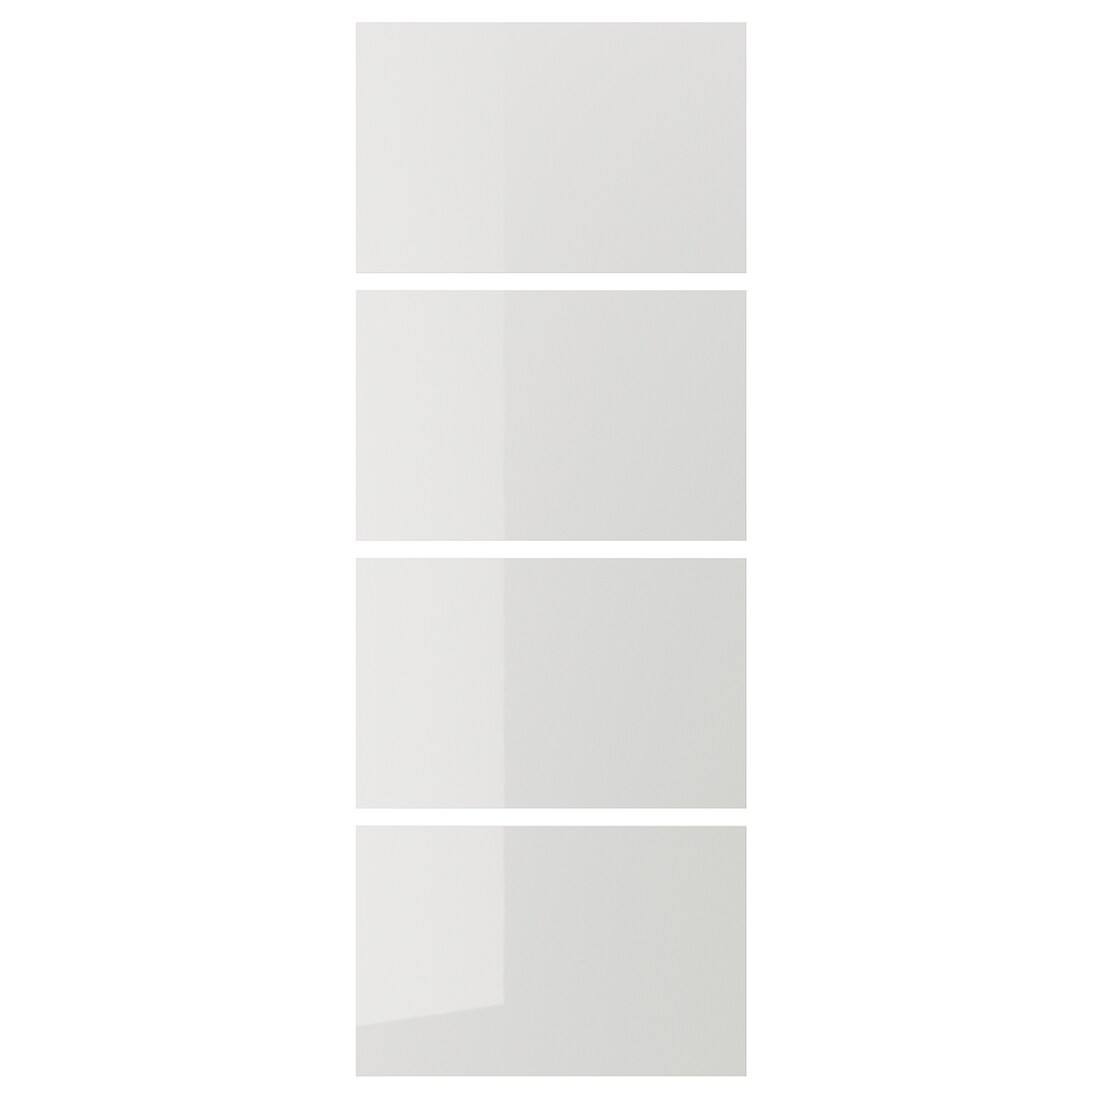 HOKKSUND ХОККСУНД 4 панели для рамы раздвижной двери, глянцевый светло-серый, 75x201 cм